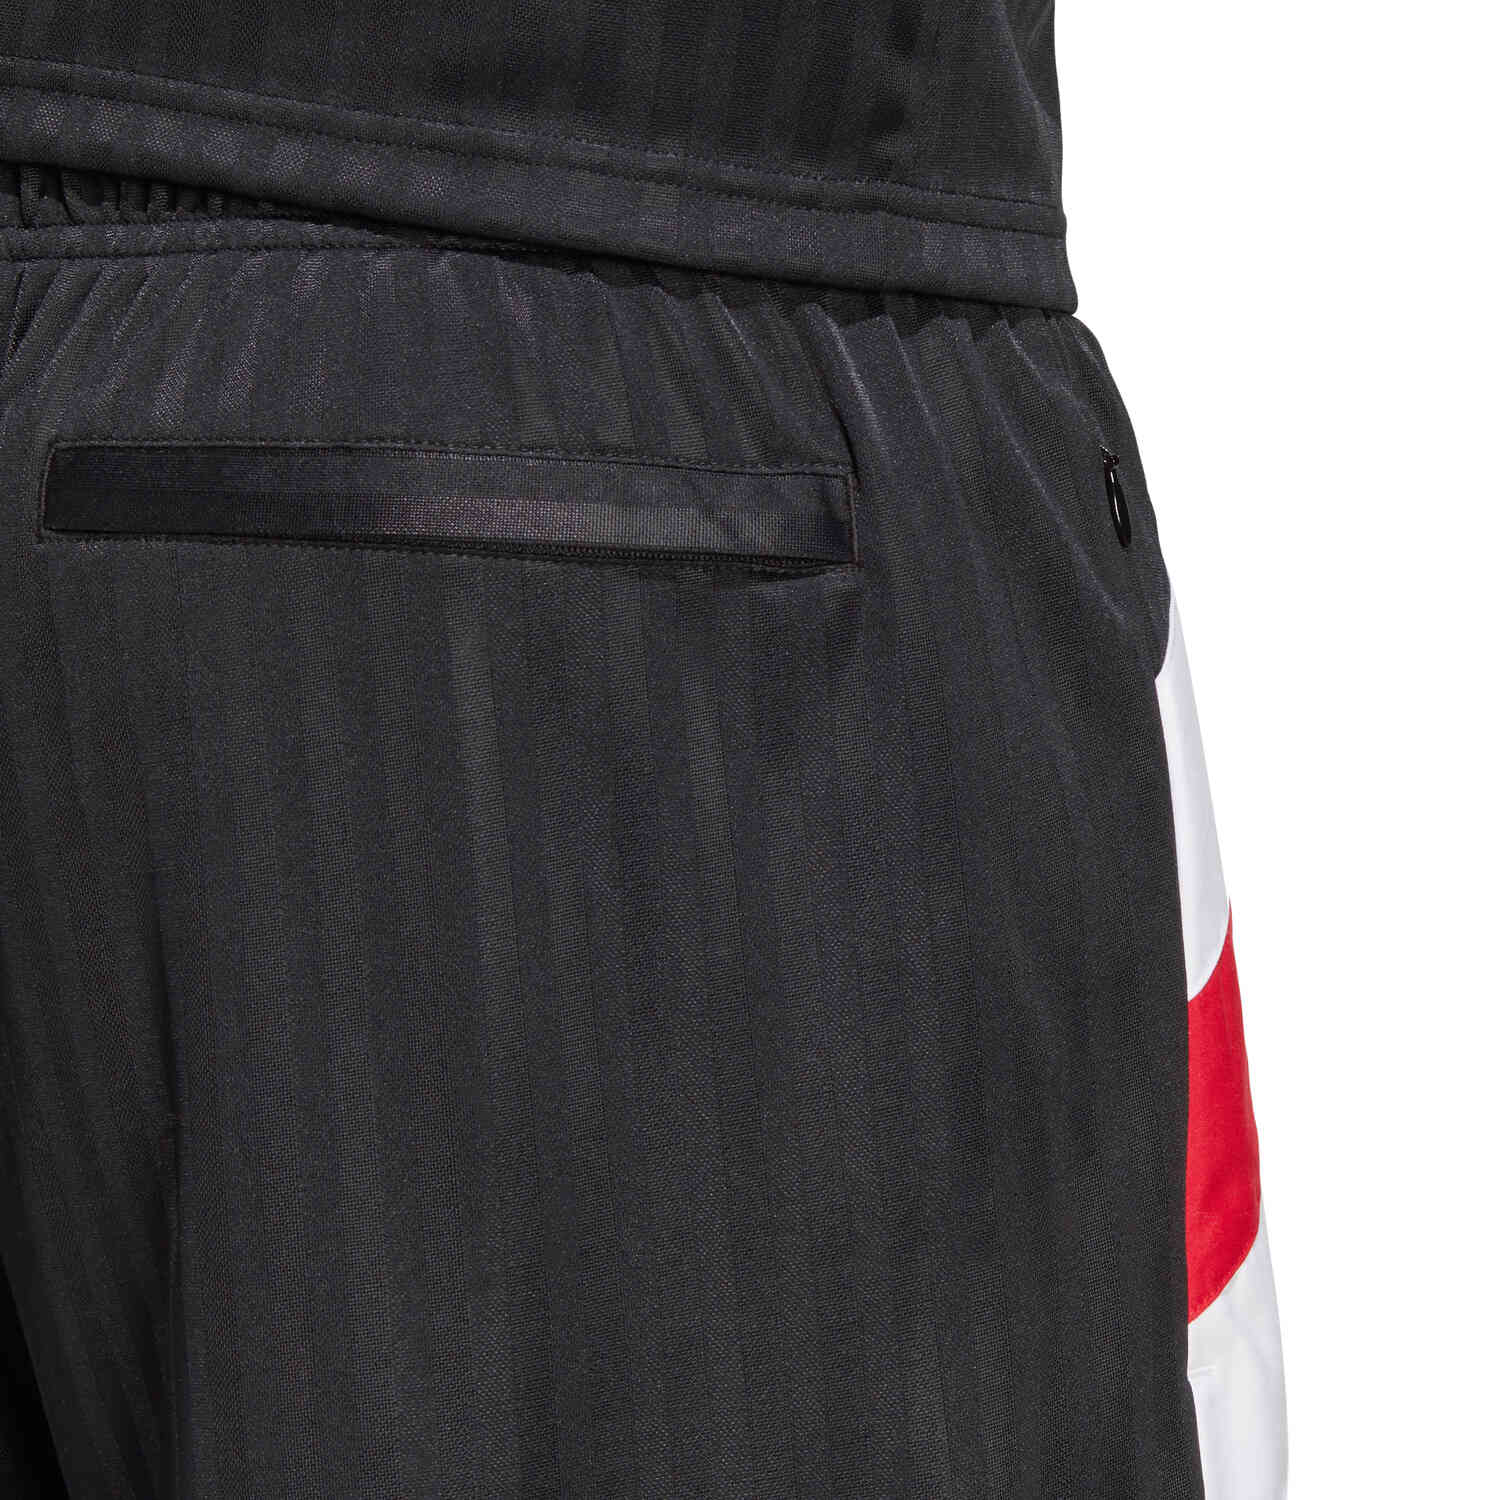 adidas Manchester United Icons Shorts – Black